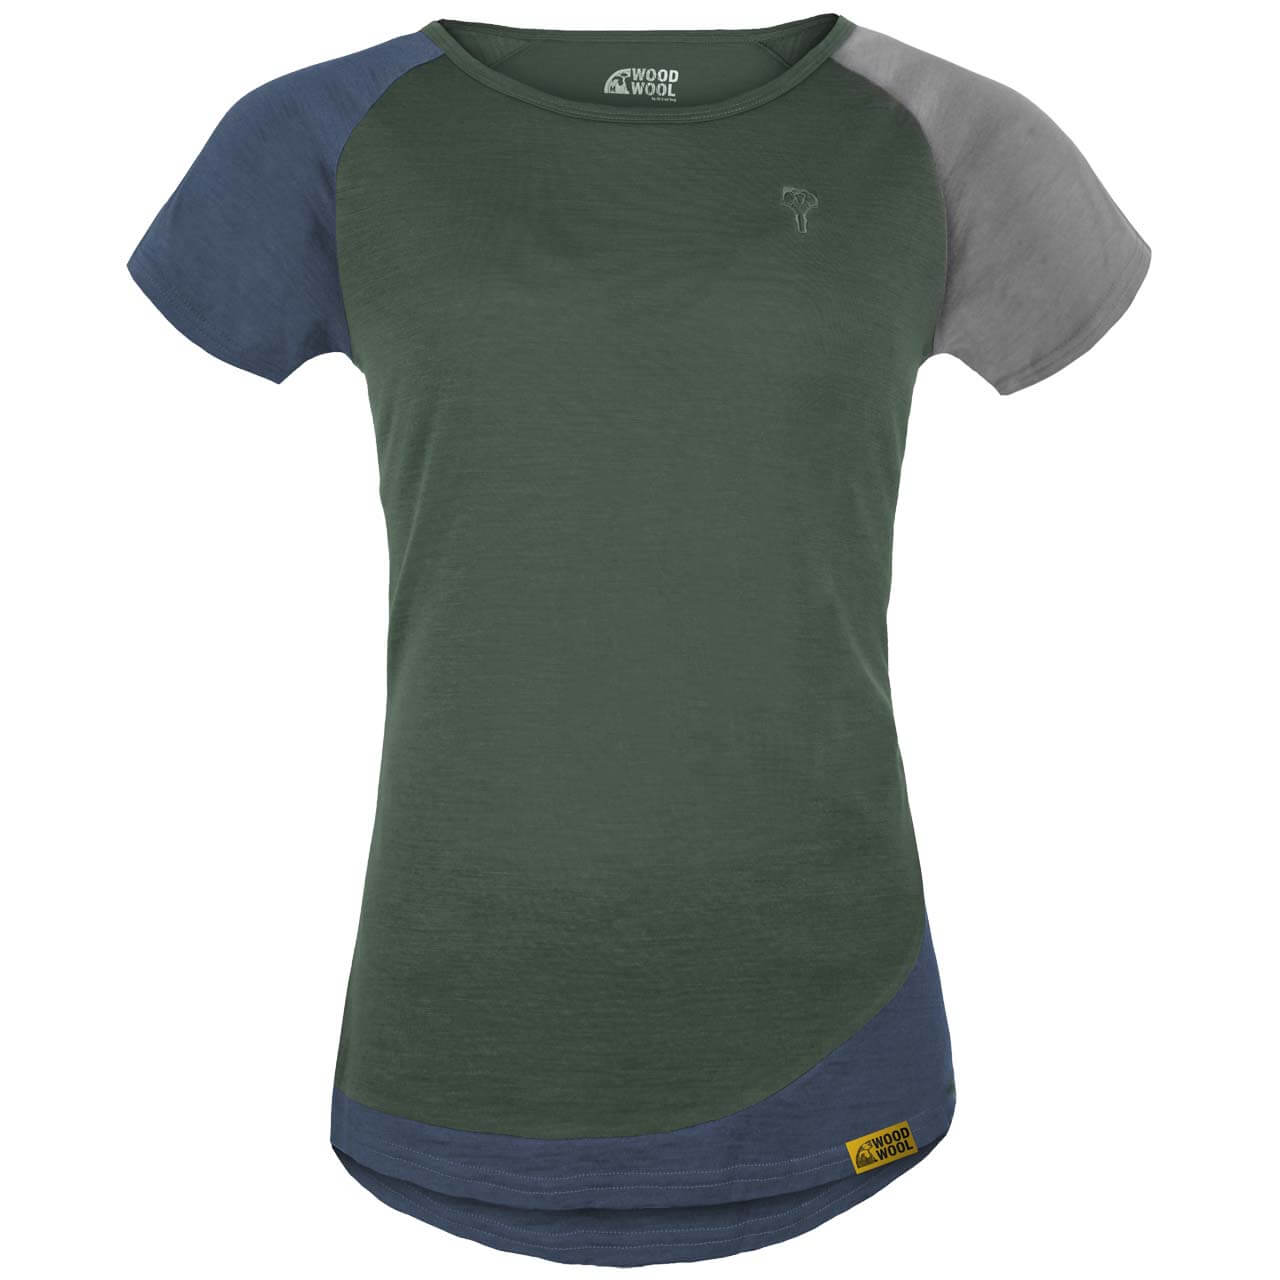 Grüezi Bag WoodWool Janeway T-Shirt - Bayberry Green, XS von Grüezi Bag